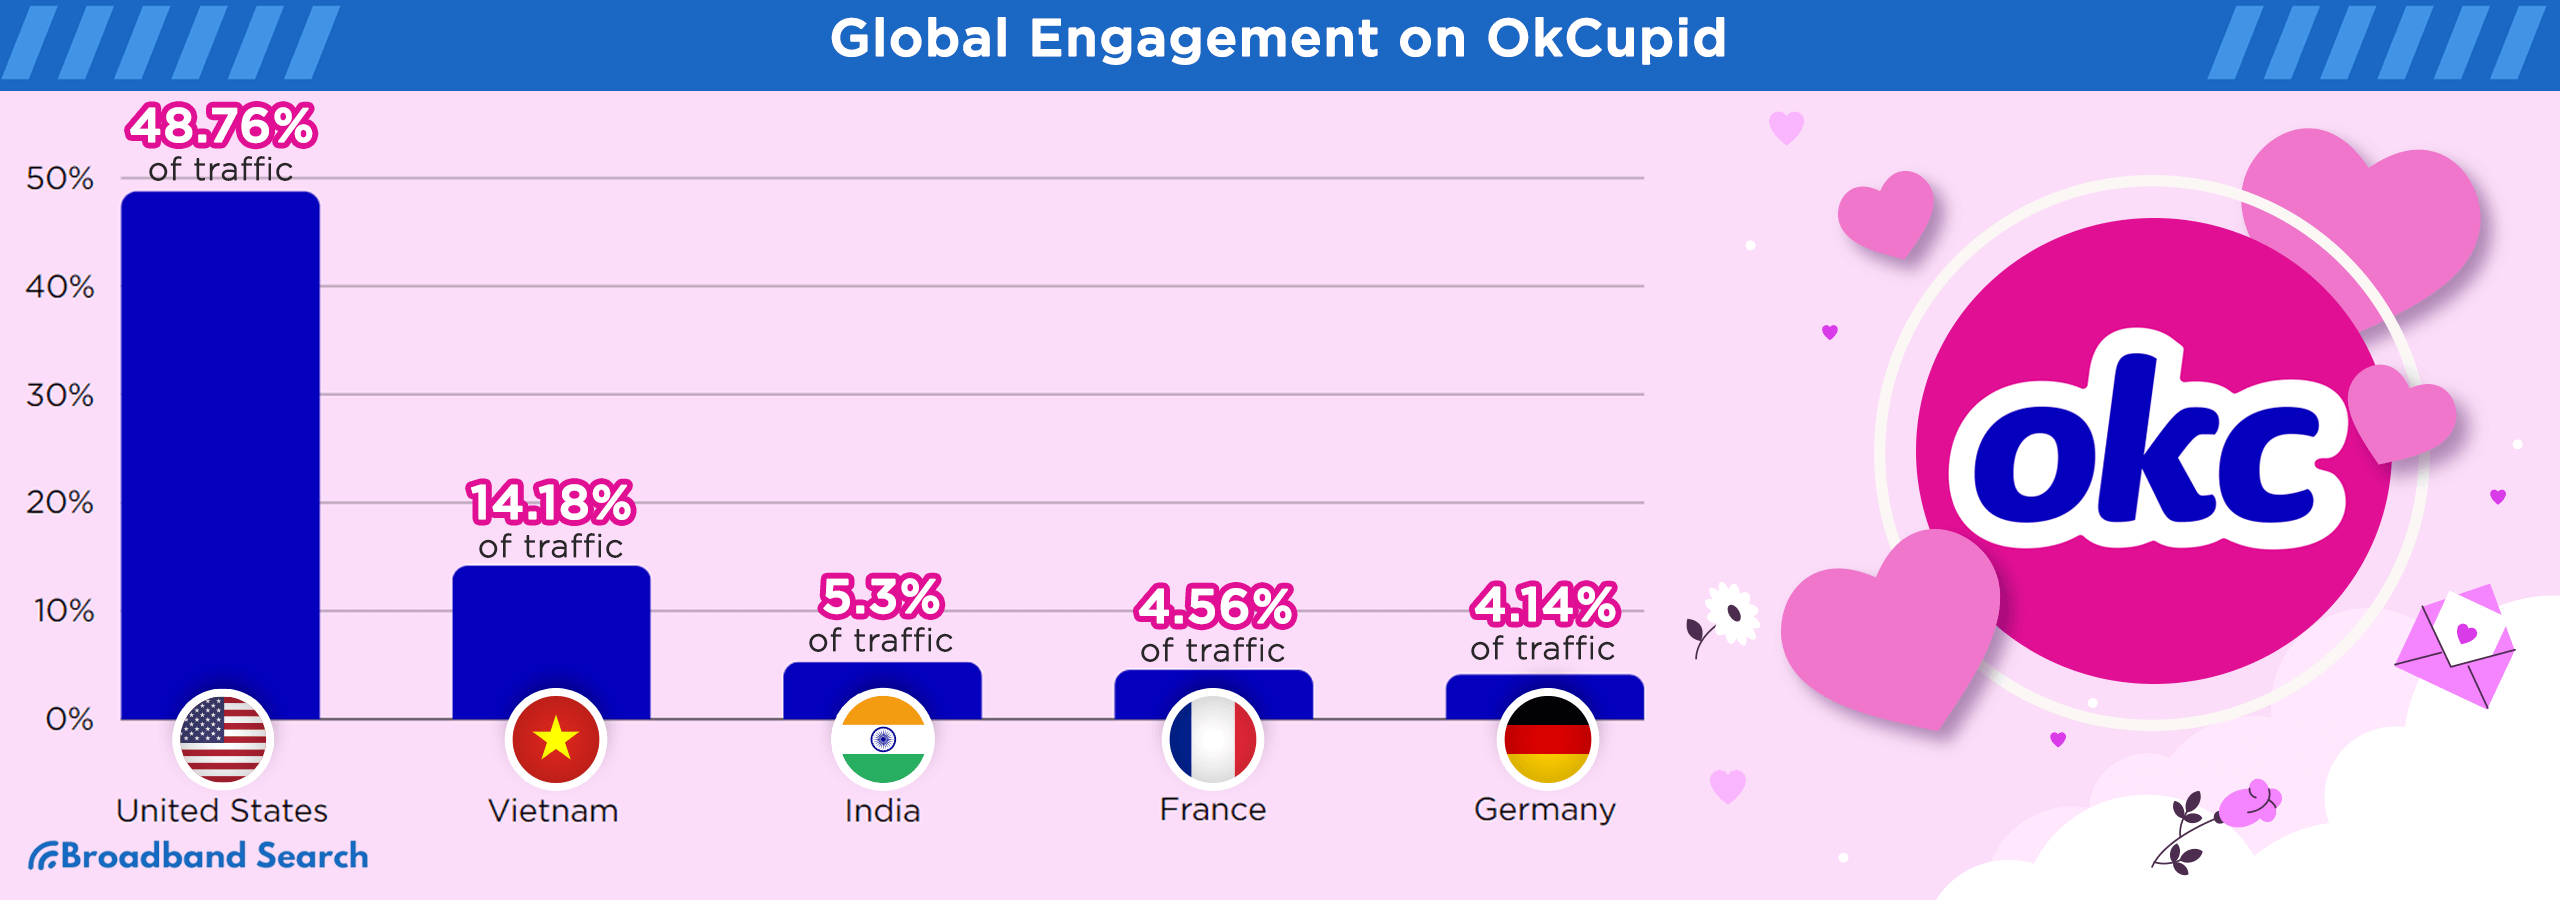 Global engagement on Okcupid